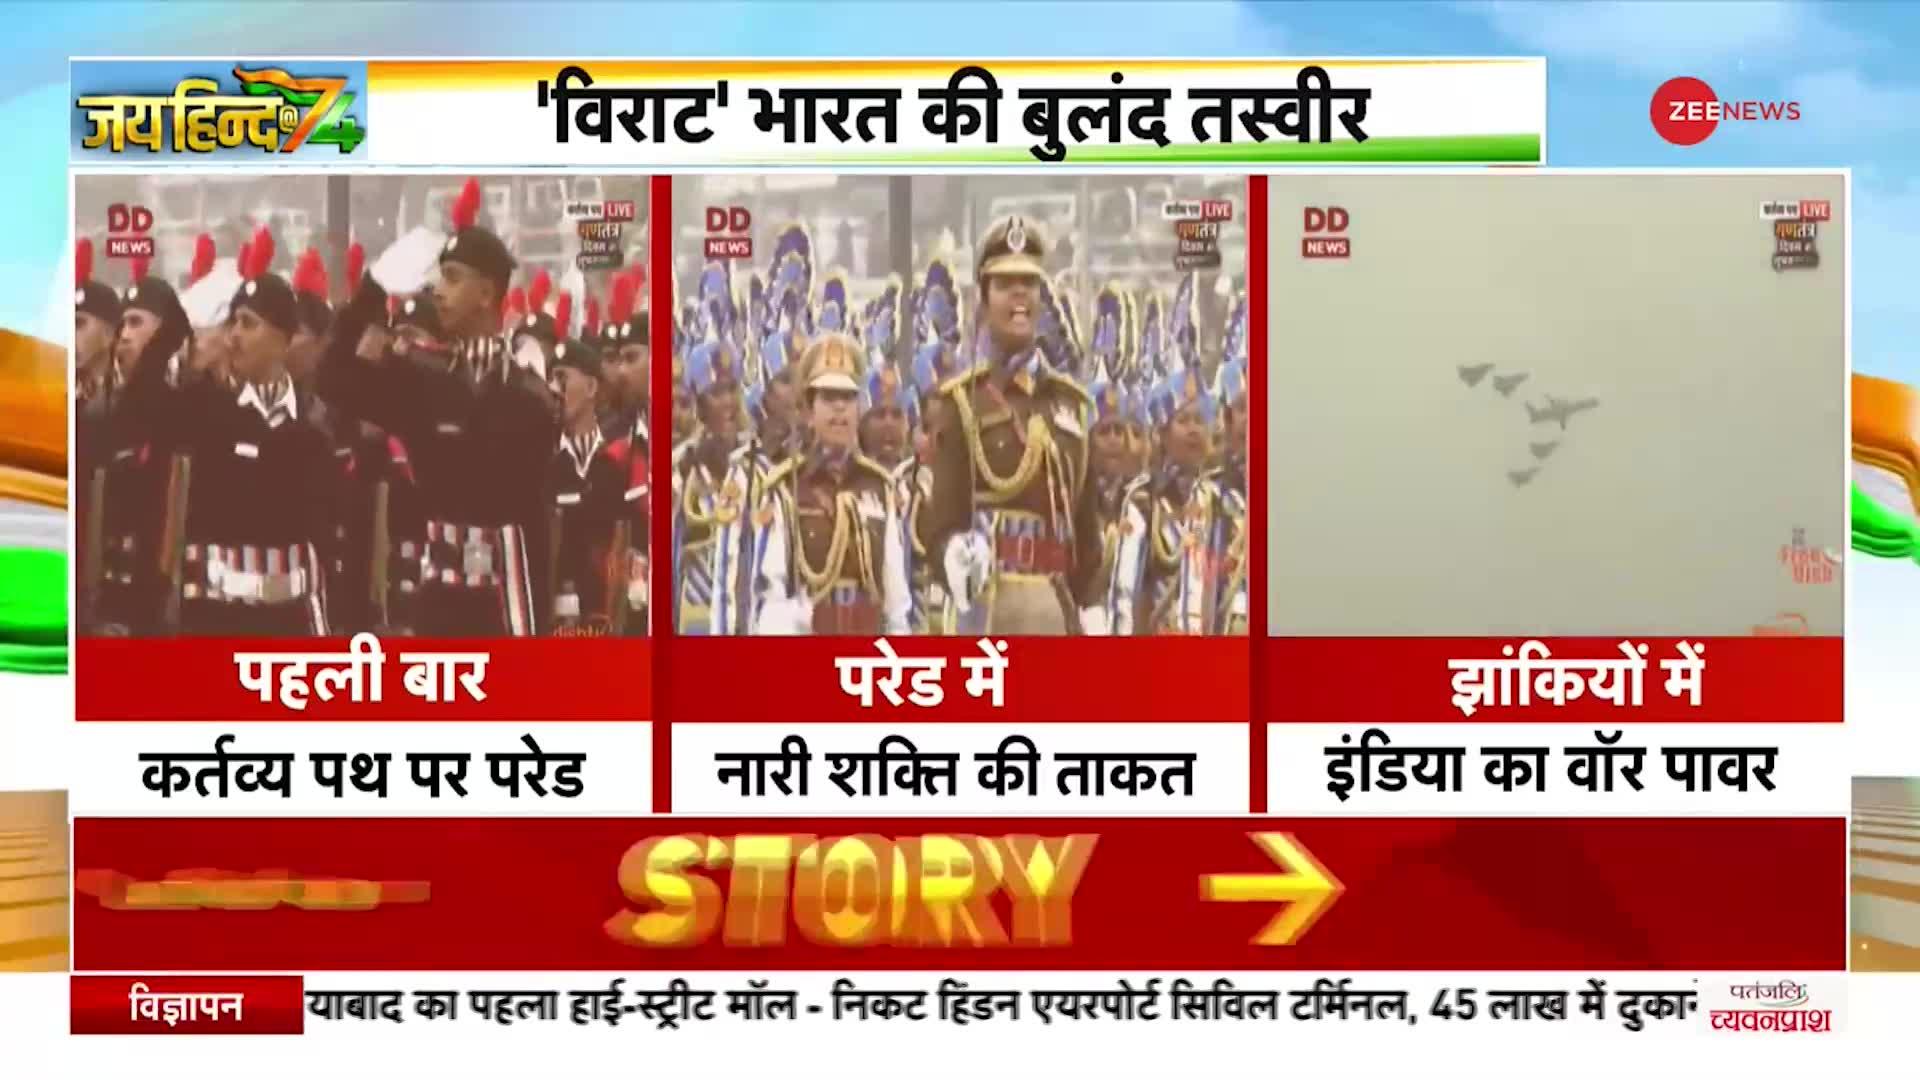 74th Republic Day: पहली बार Kartavya Path पर परेड, बसंत पंचमी के रंग में दिखे PM Modi